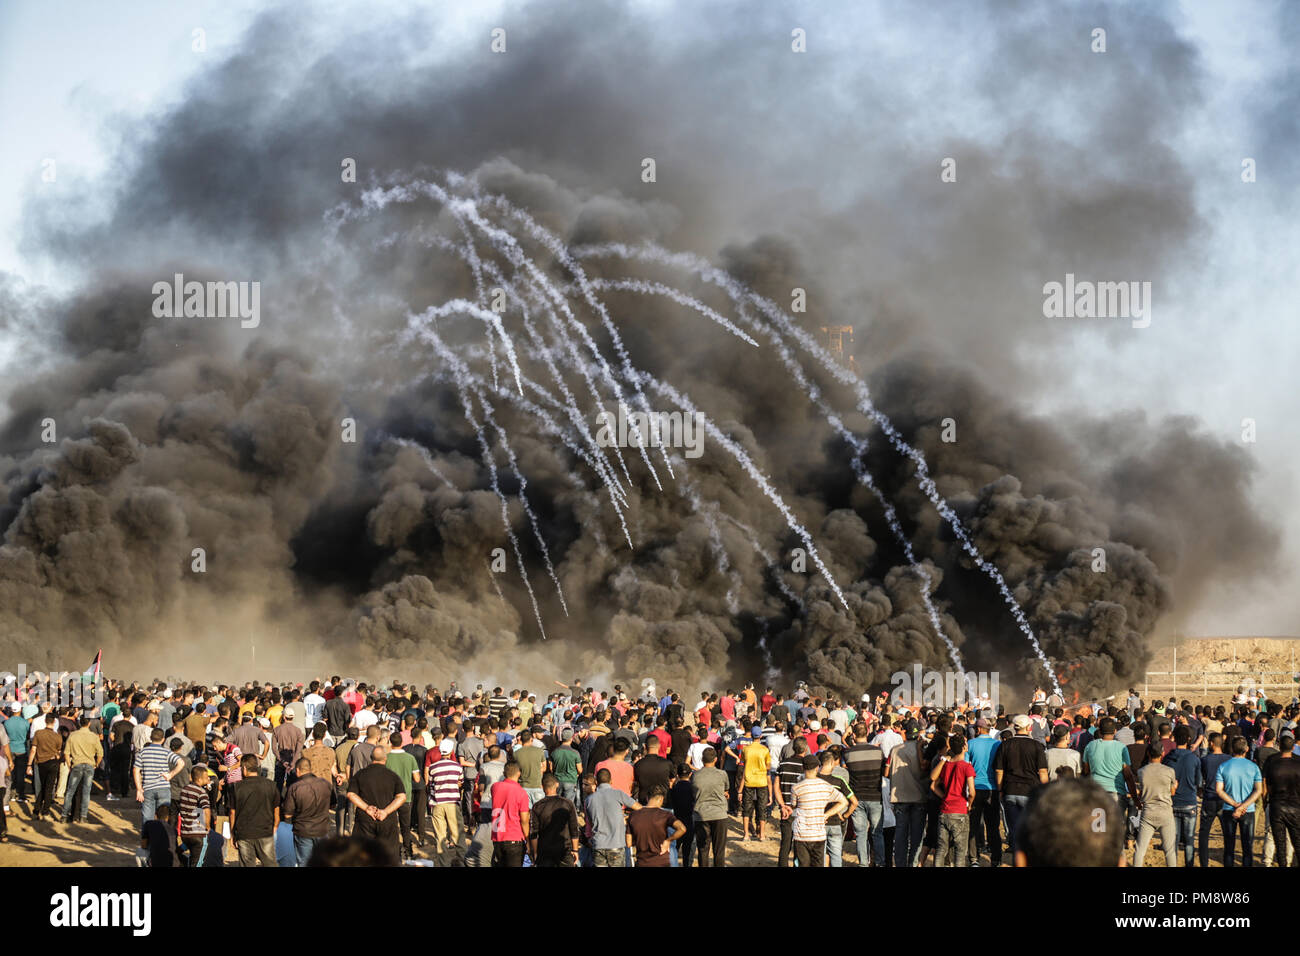 Tränengas und Rauch durch die israelischen Streitkräfte gesehen haben, in eine riesige Menge während der zusammenstöße gefeuert. Auseinandersetzungen zwischen palästinensischen Demonstranten und israelischen Kräfte während eines Protestes entlang der israelischen Zaun östlich von Gaza-stadt. Stockfoto